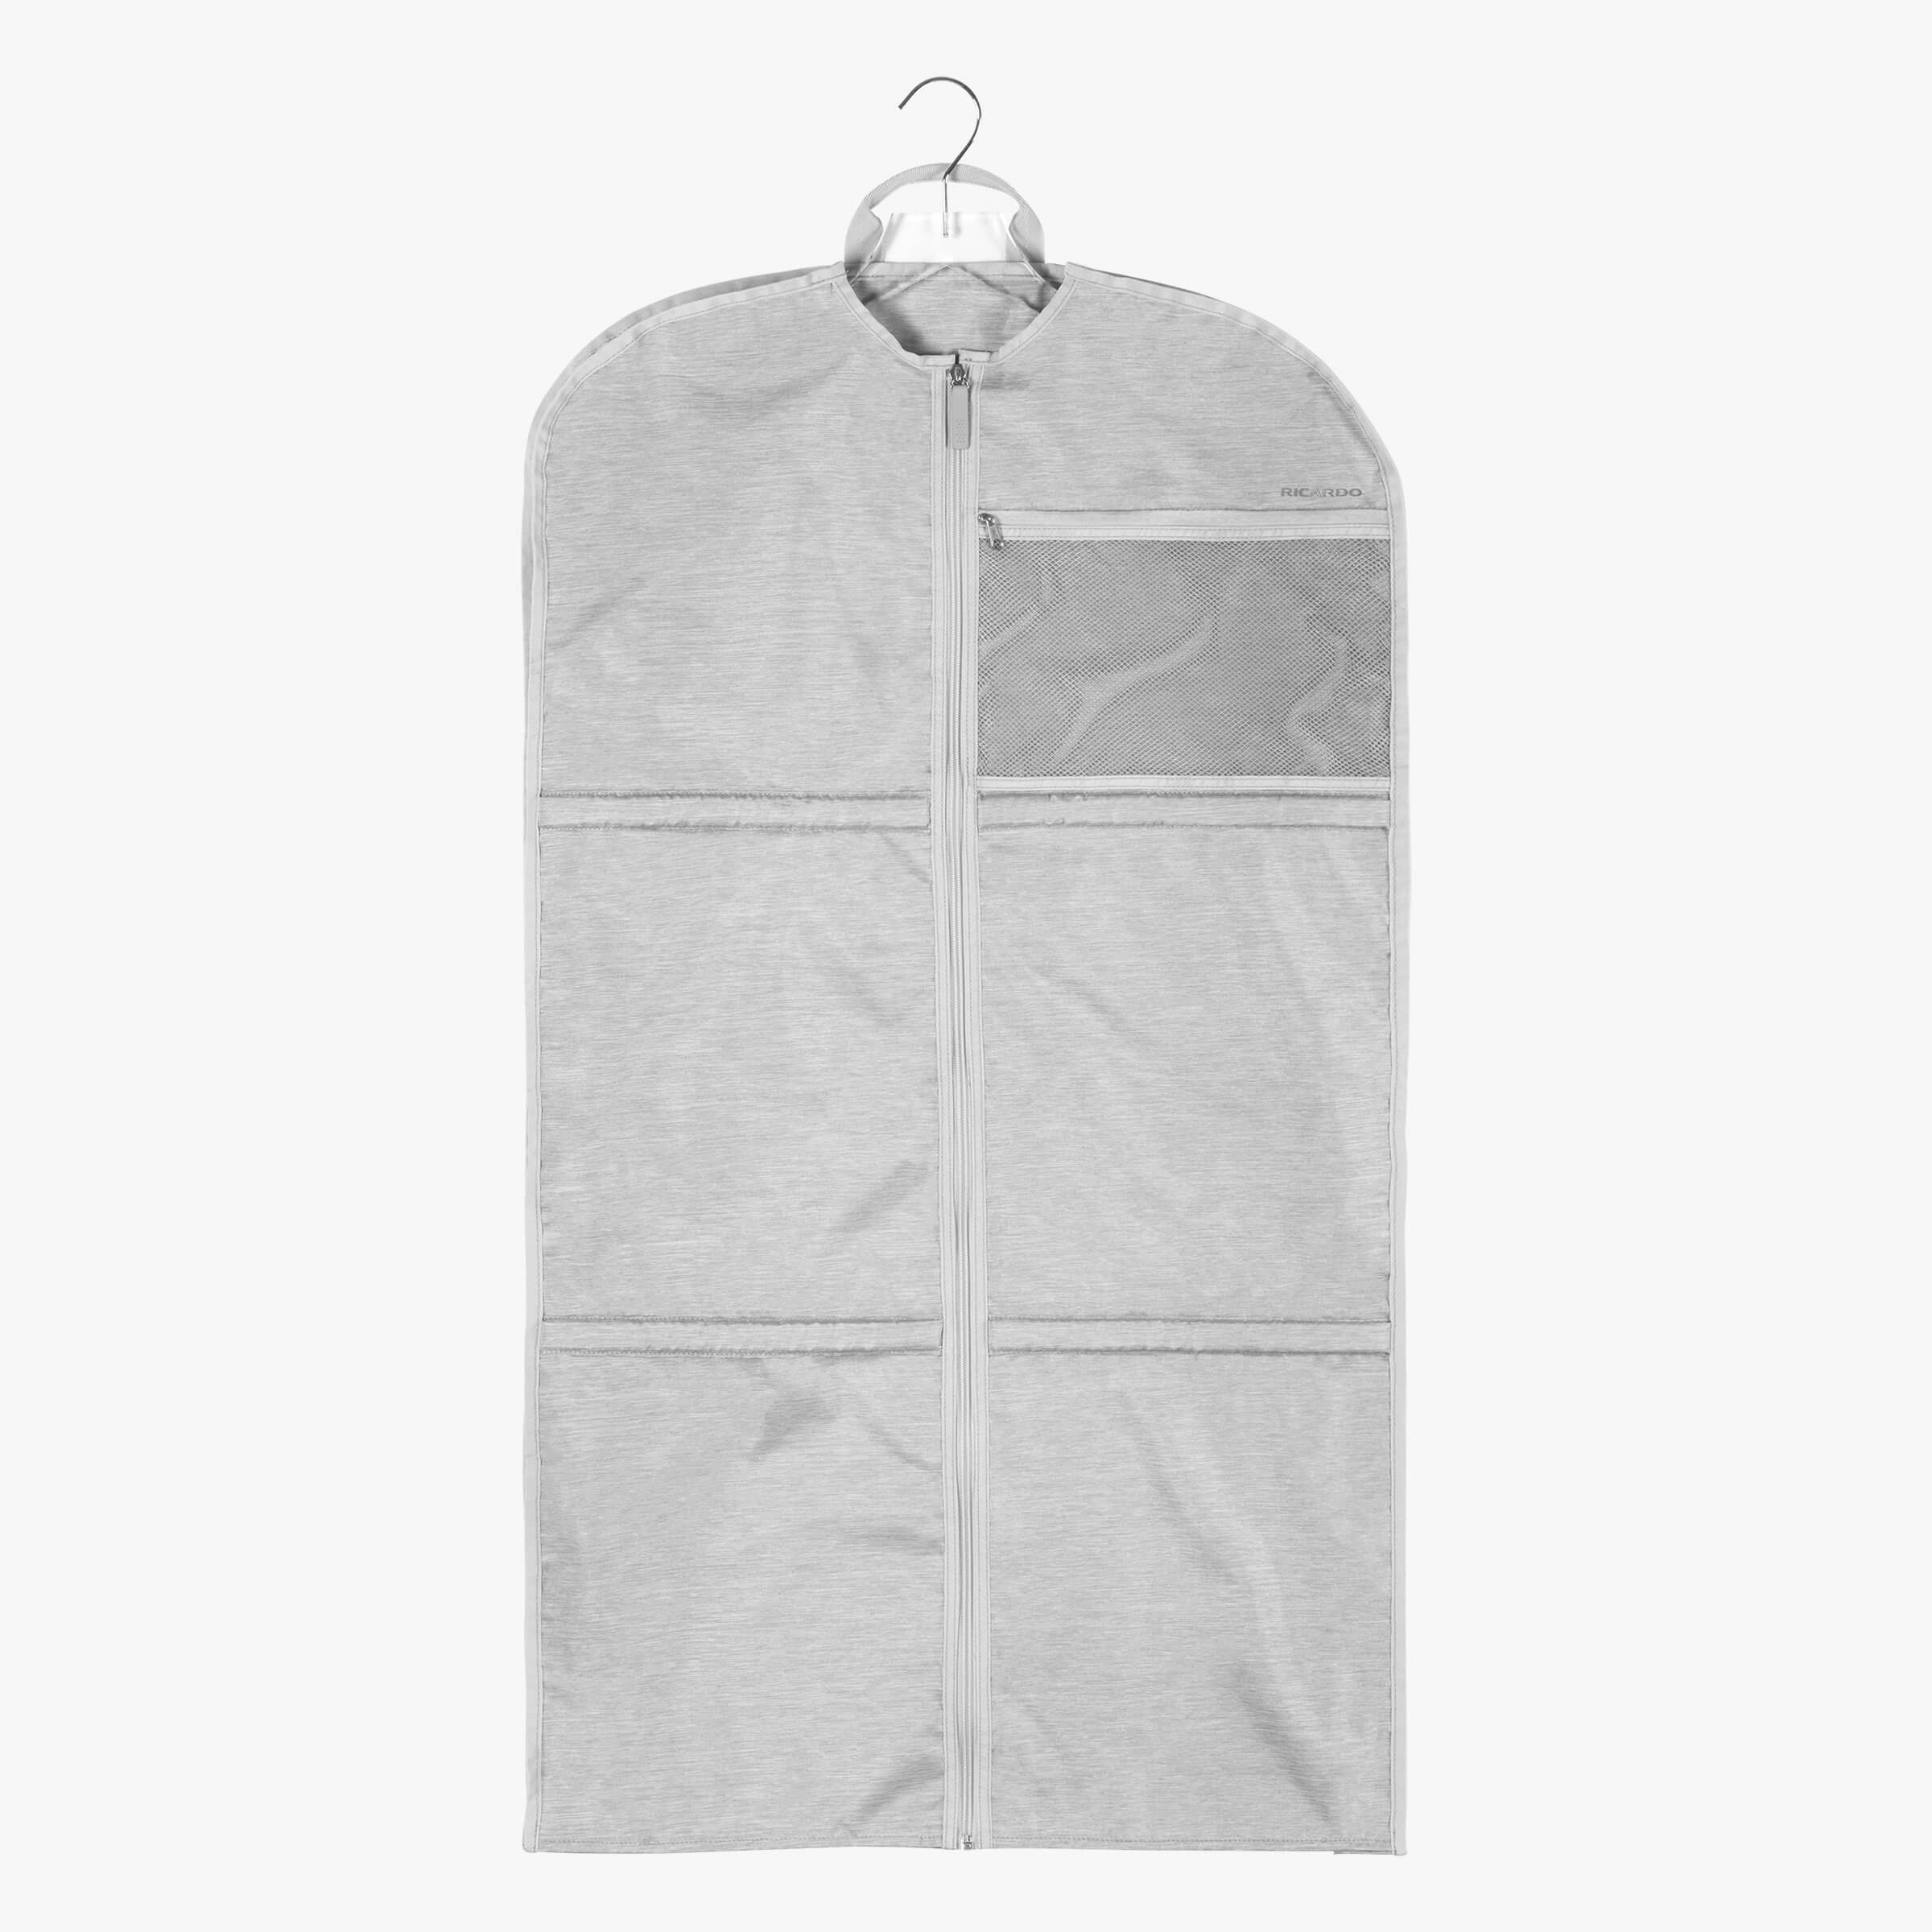 Essentials Large Garment Sleeve in Cloud Front Hanger View~~Color:Cloud~~Description:Front